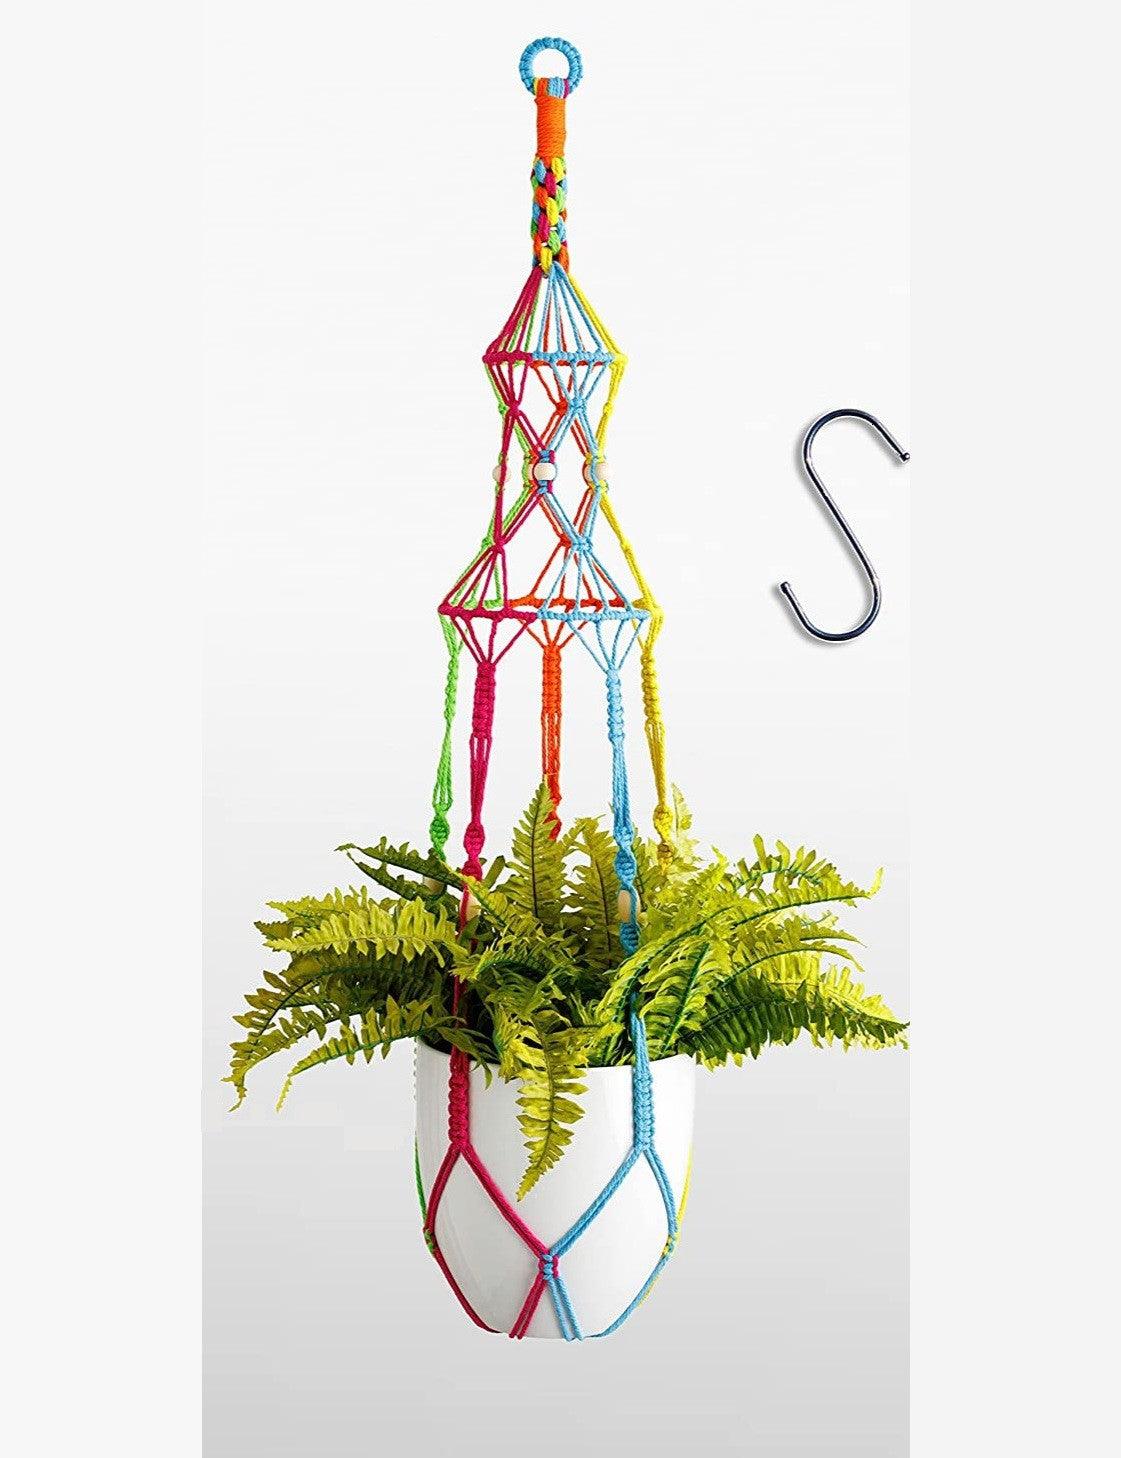 Harmony Weave Hanging Planter - Youpa's Rainbow Large Macrame Plant Hanger - KnittsKnotts